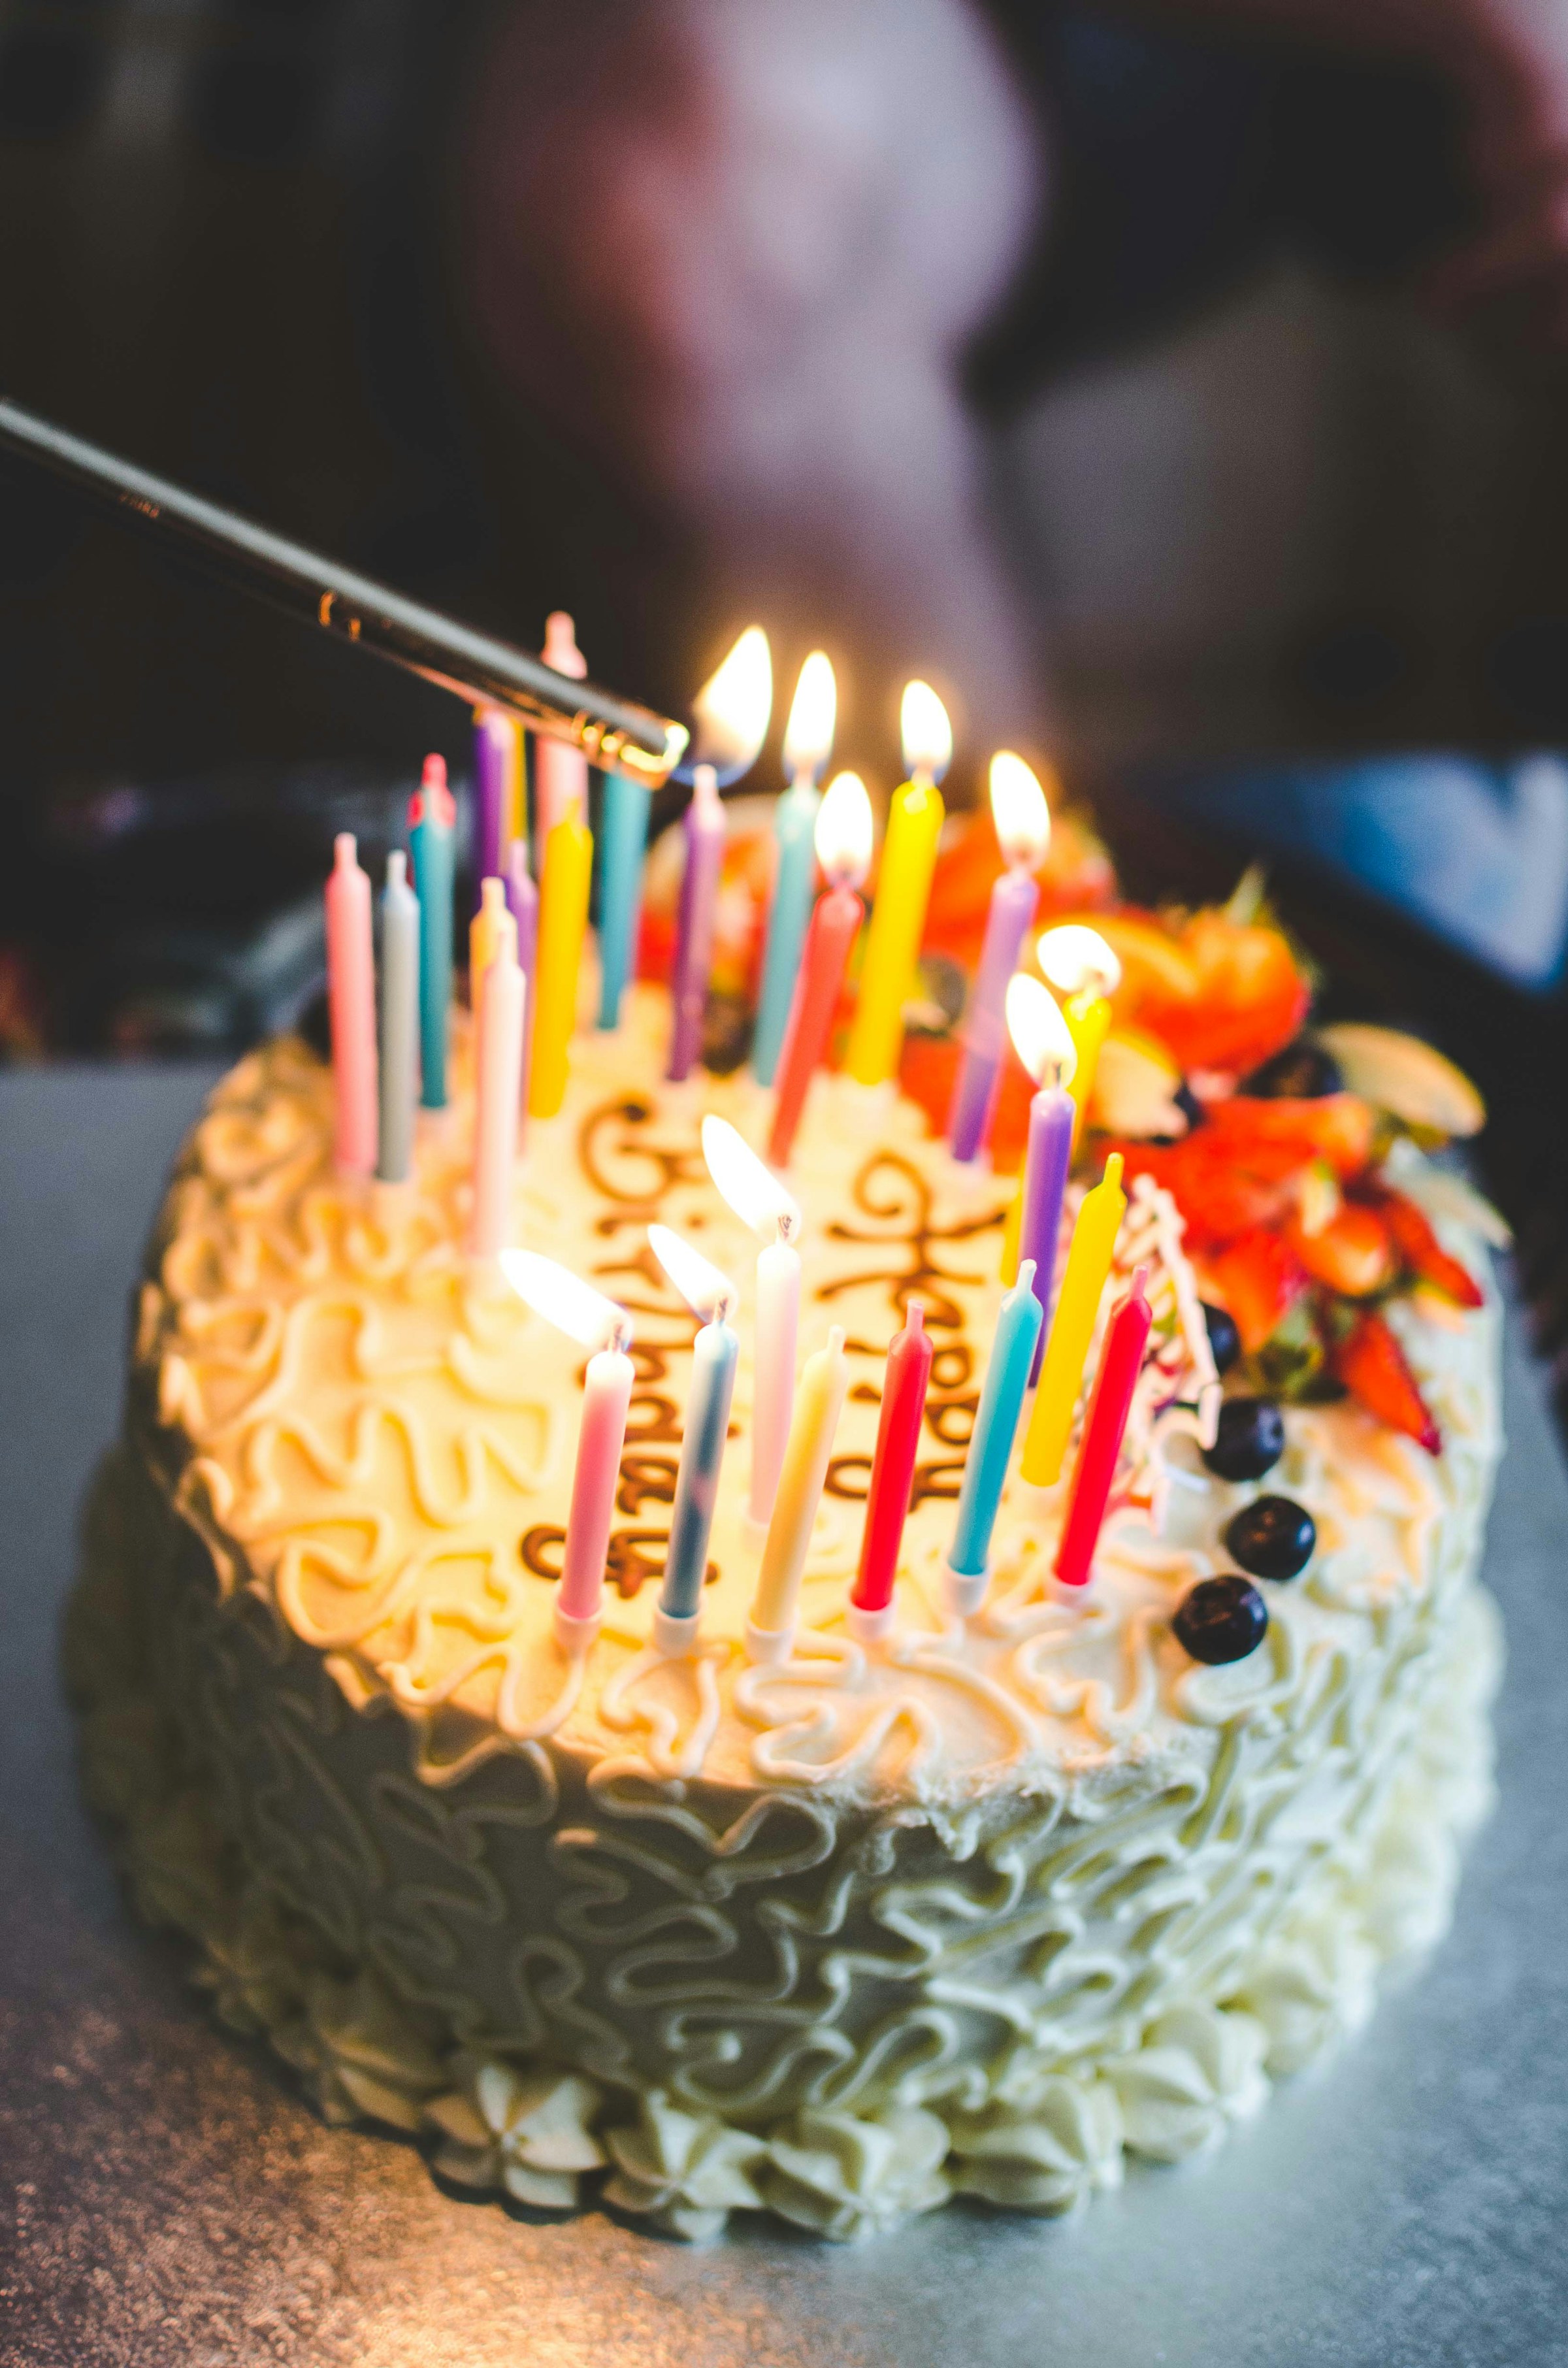 Ein Geburtstagskuchen mit Kerzen | Quelle: Unsplash